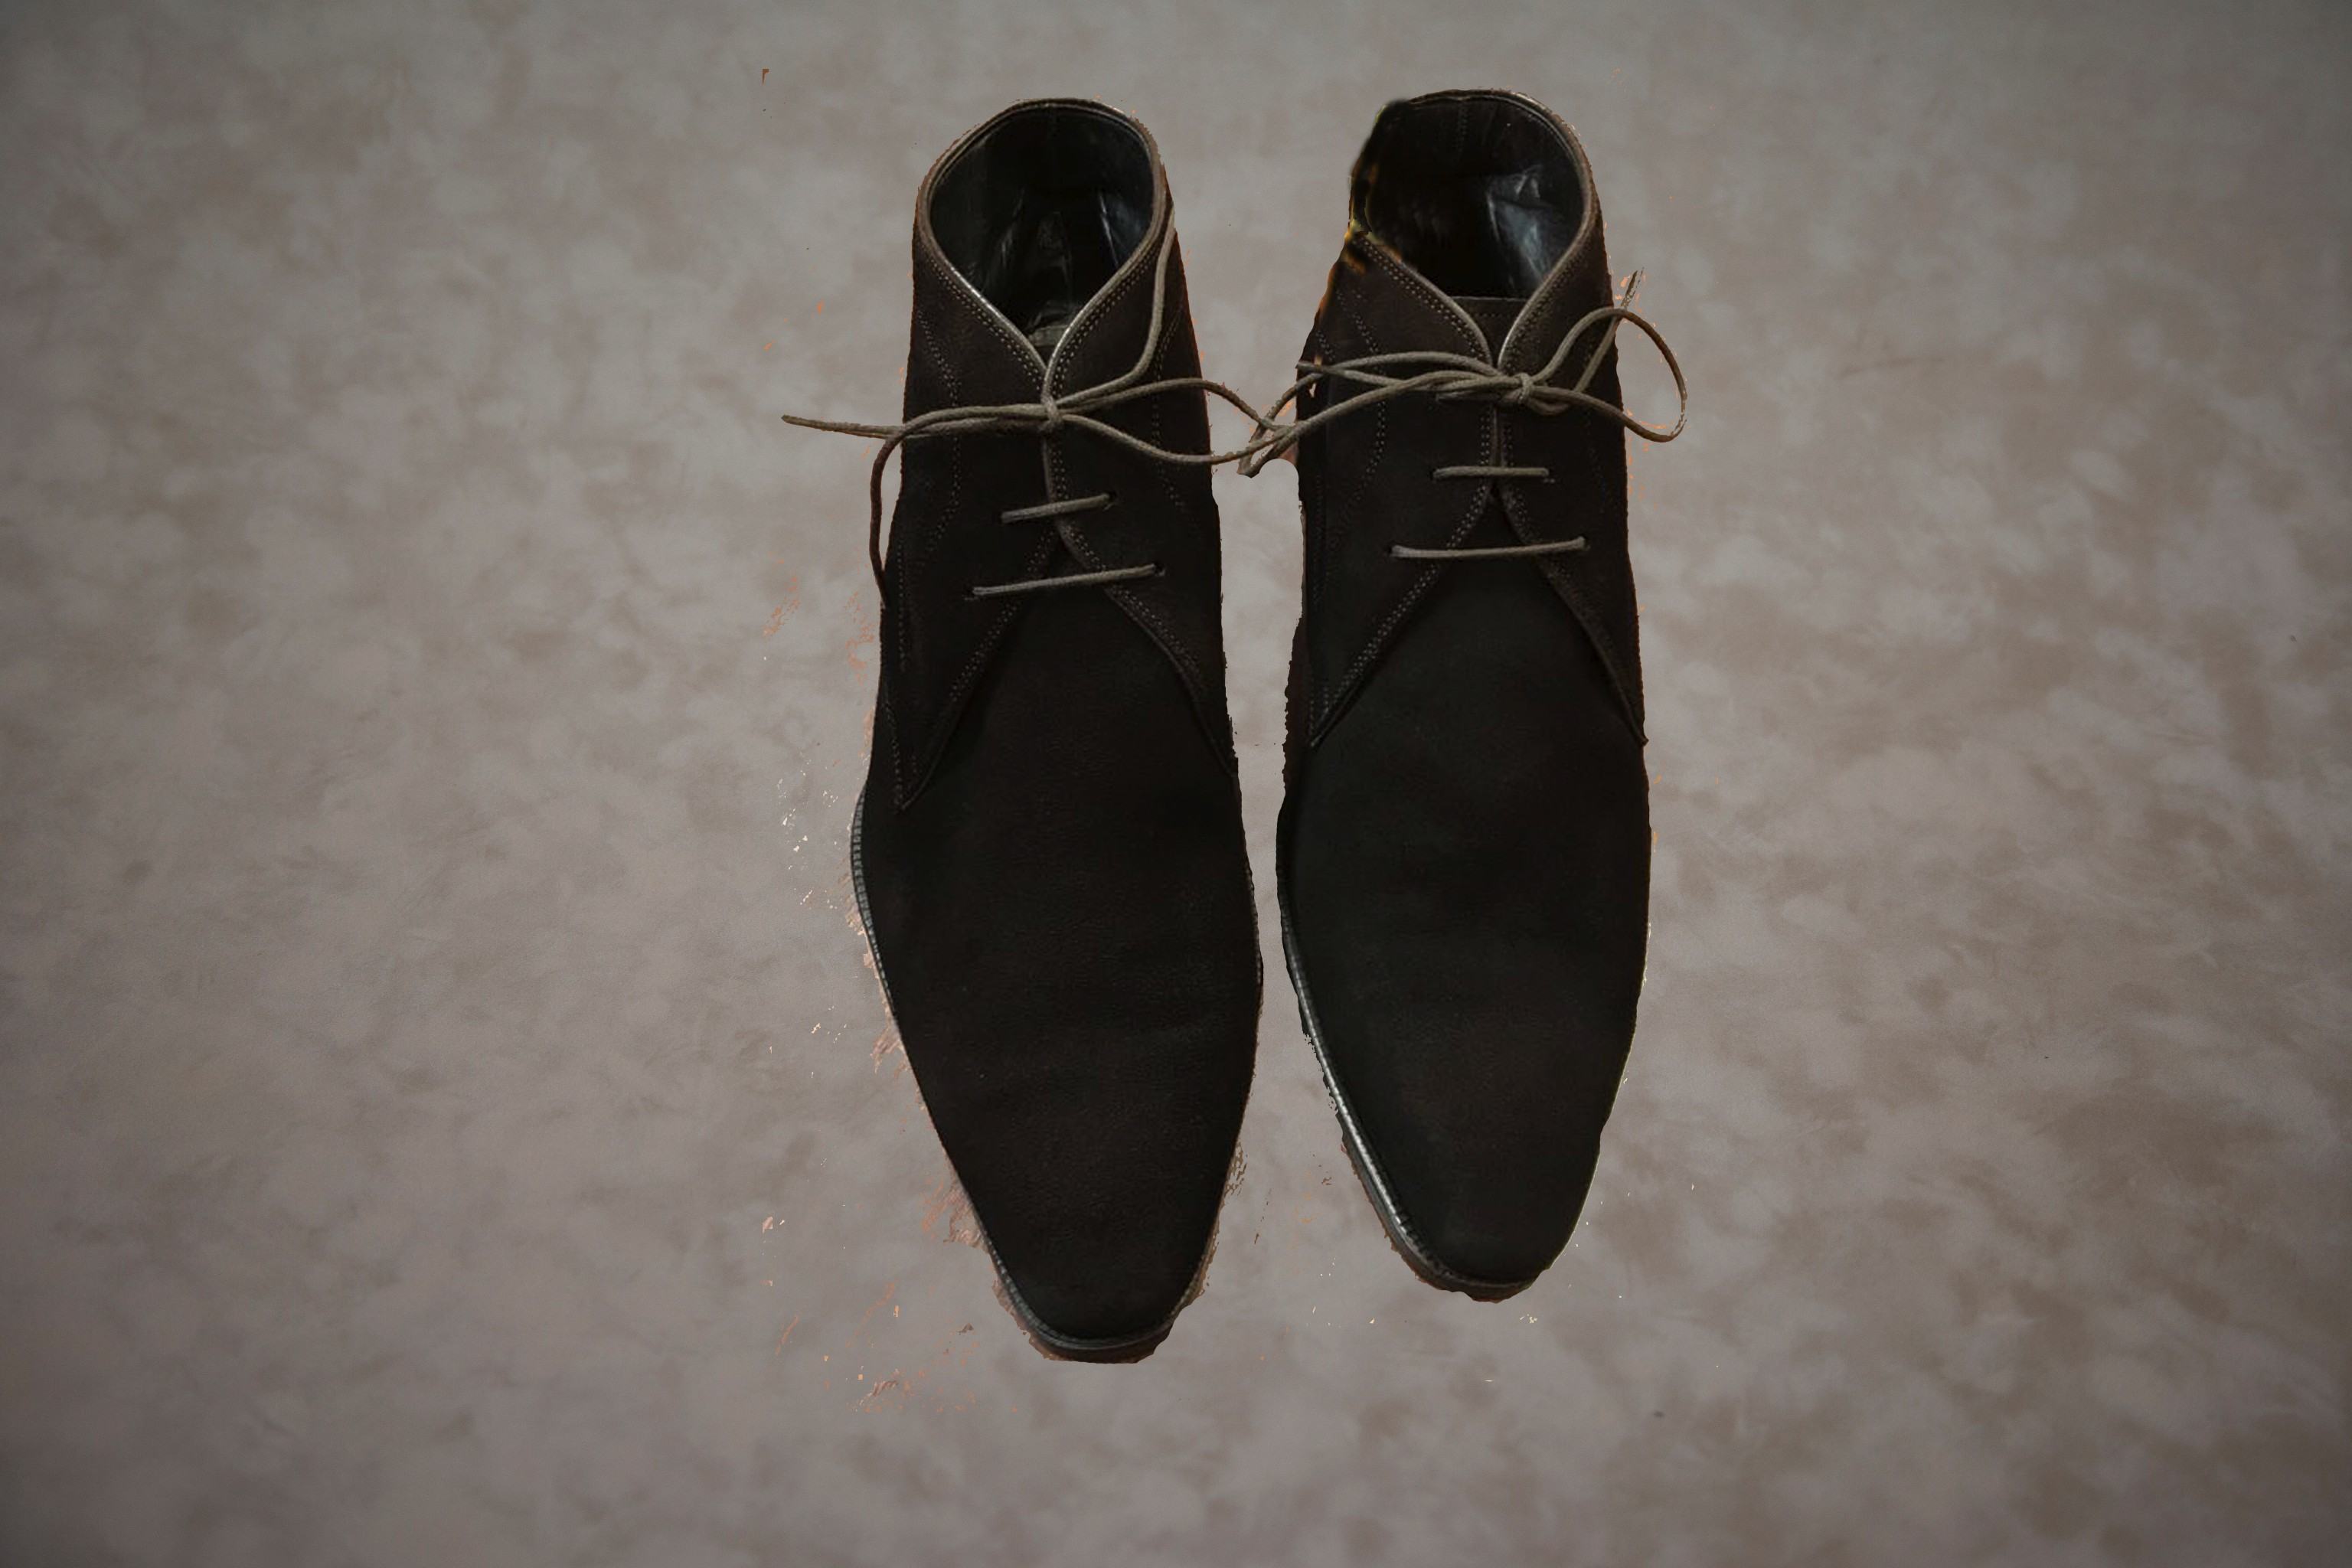 Suede schoenen reinigen met stoom na behandeling